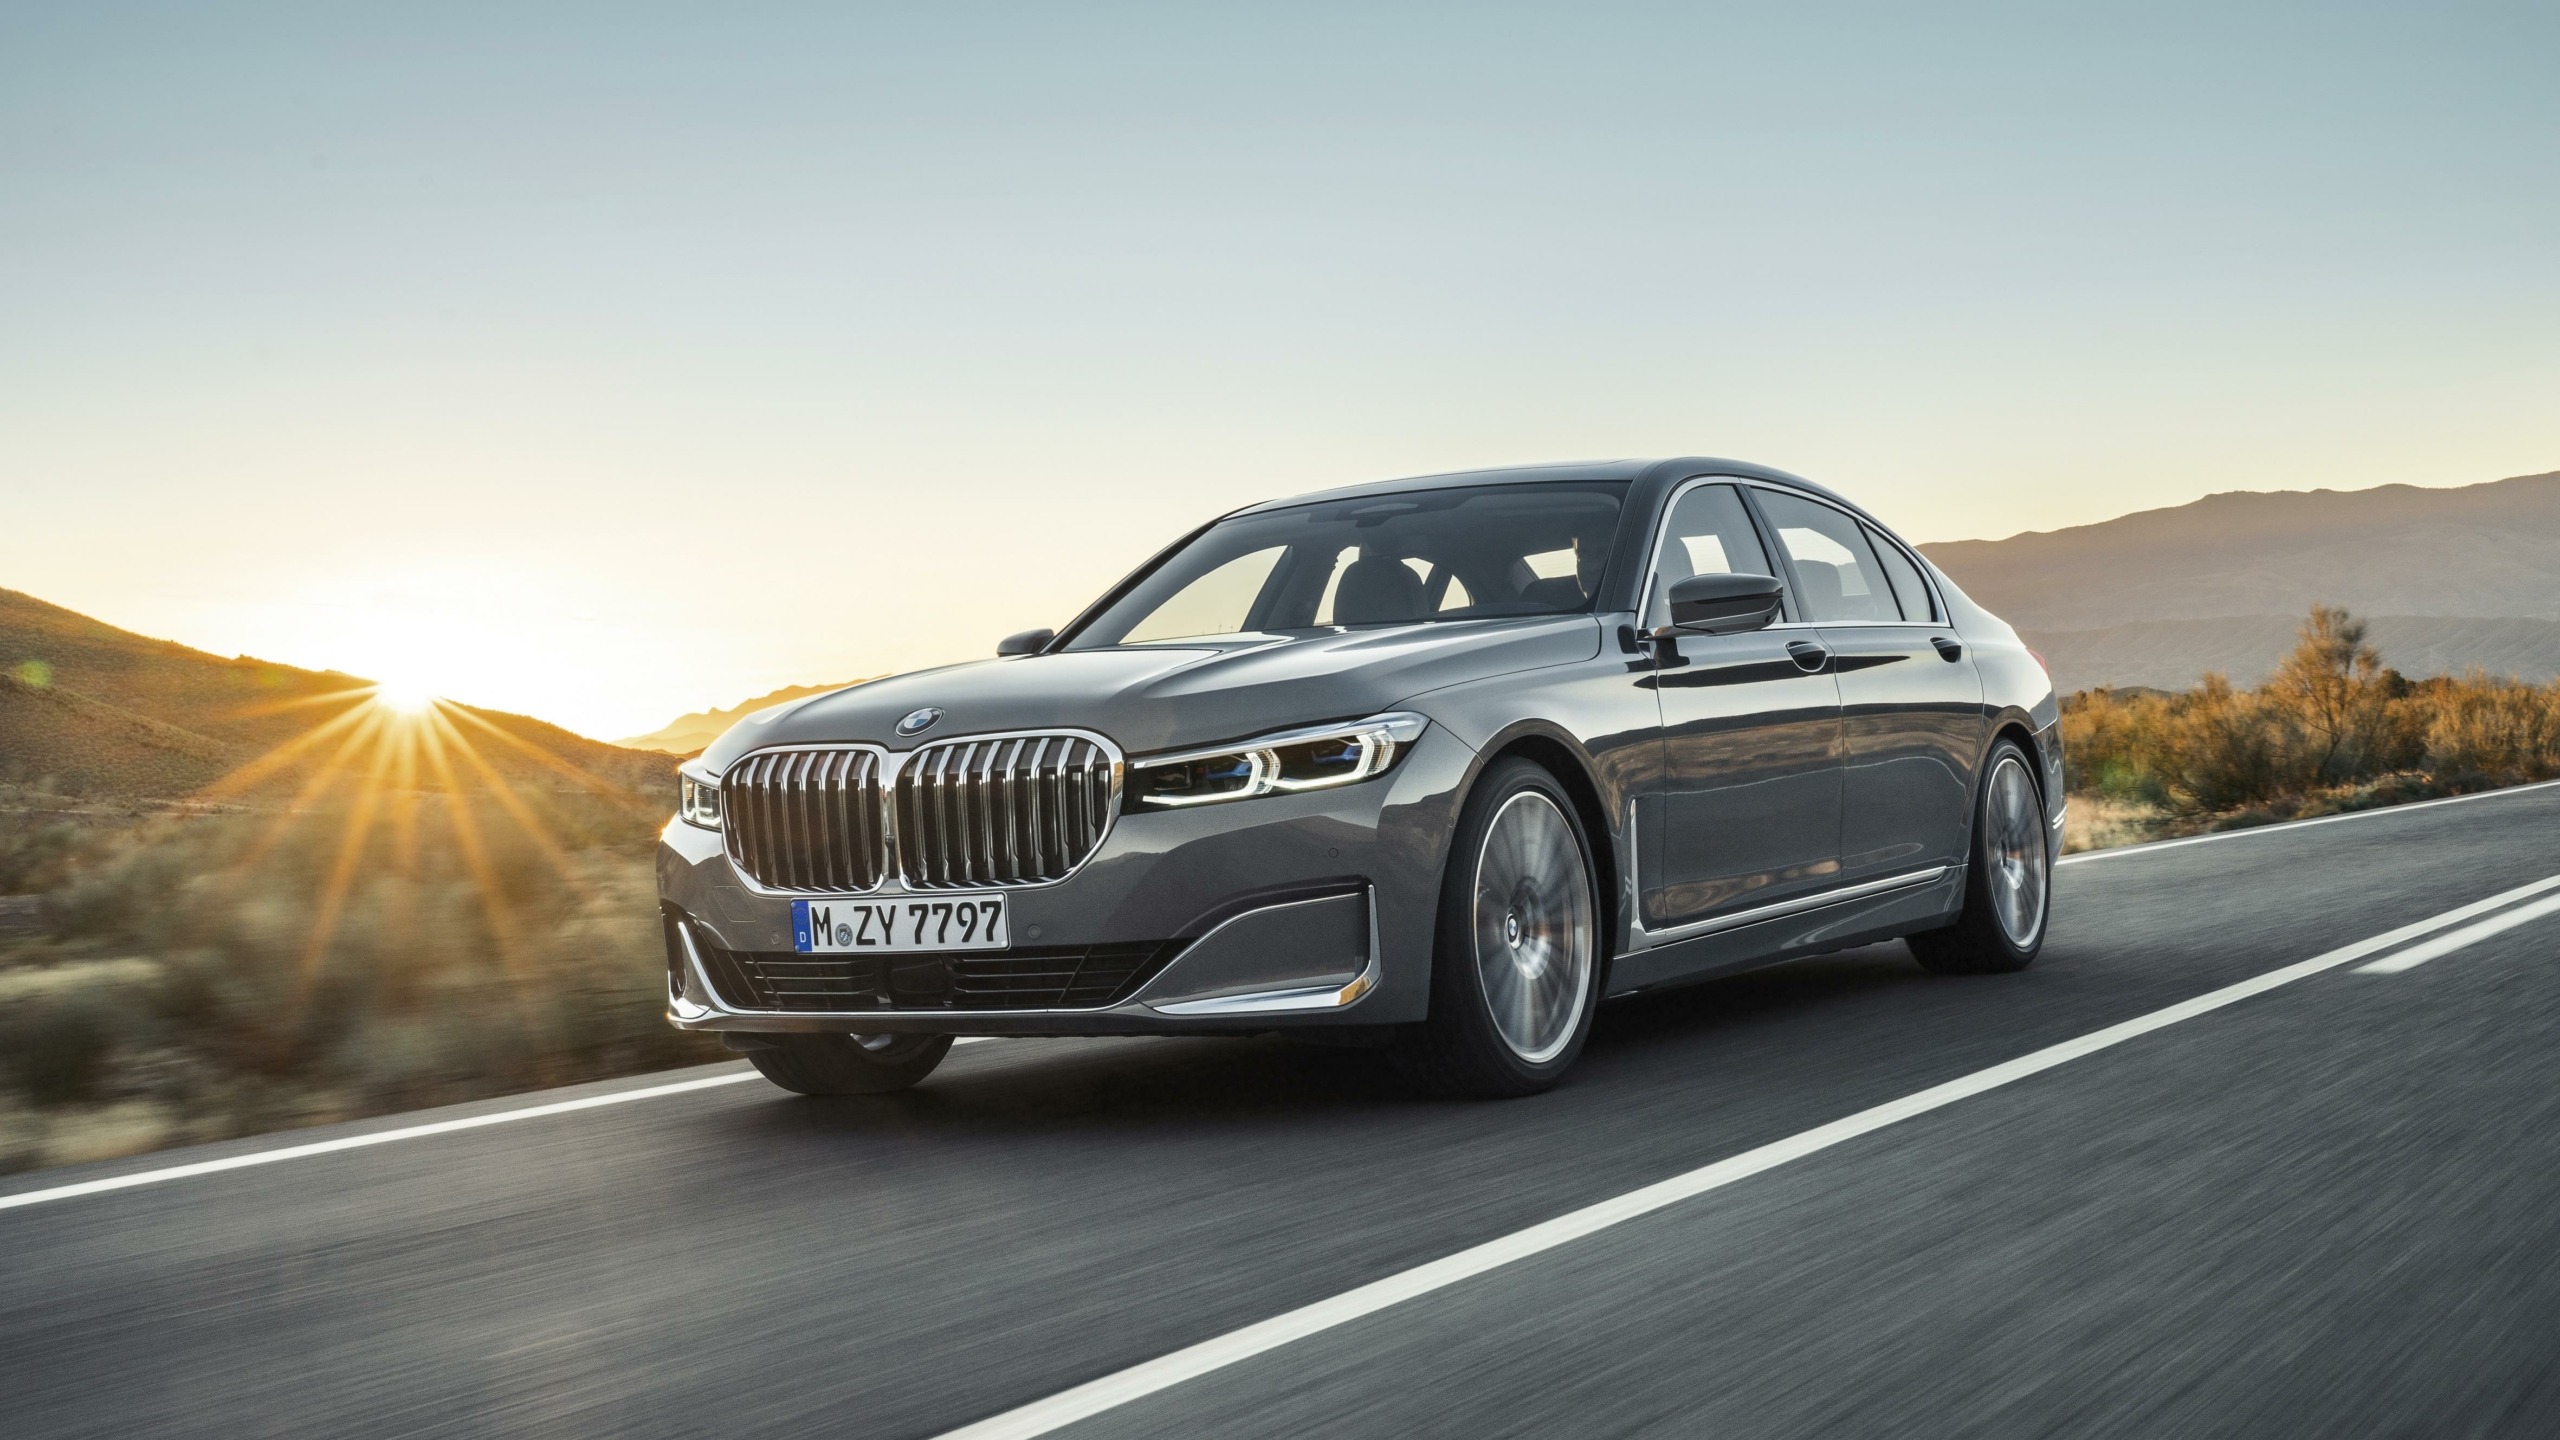 La nueva Serie 7 de BMW se lanza con una amplia gama de motores gasolina, diésel e híbridos enchufables.